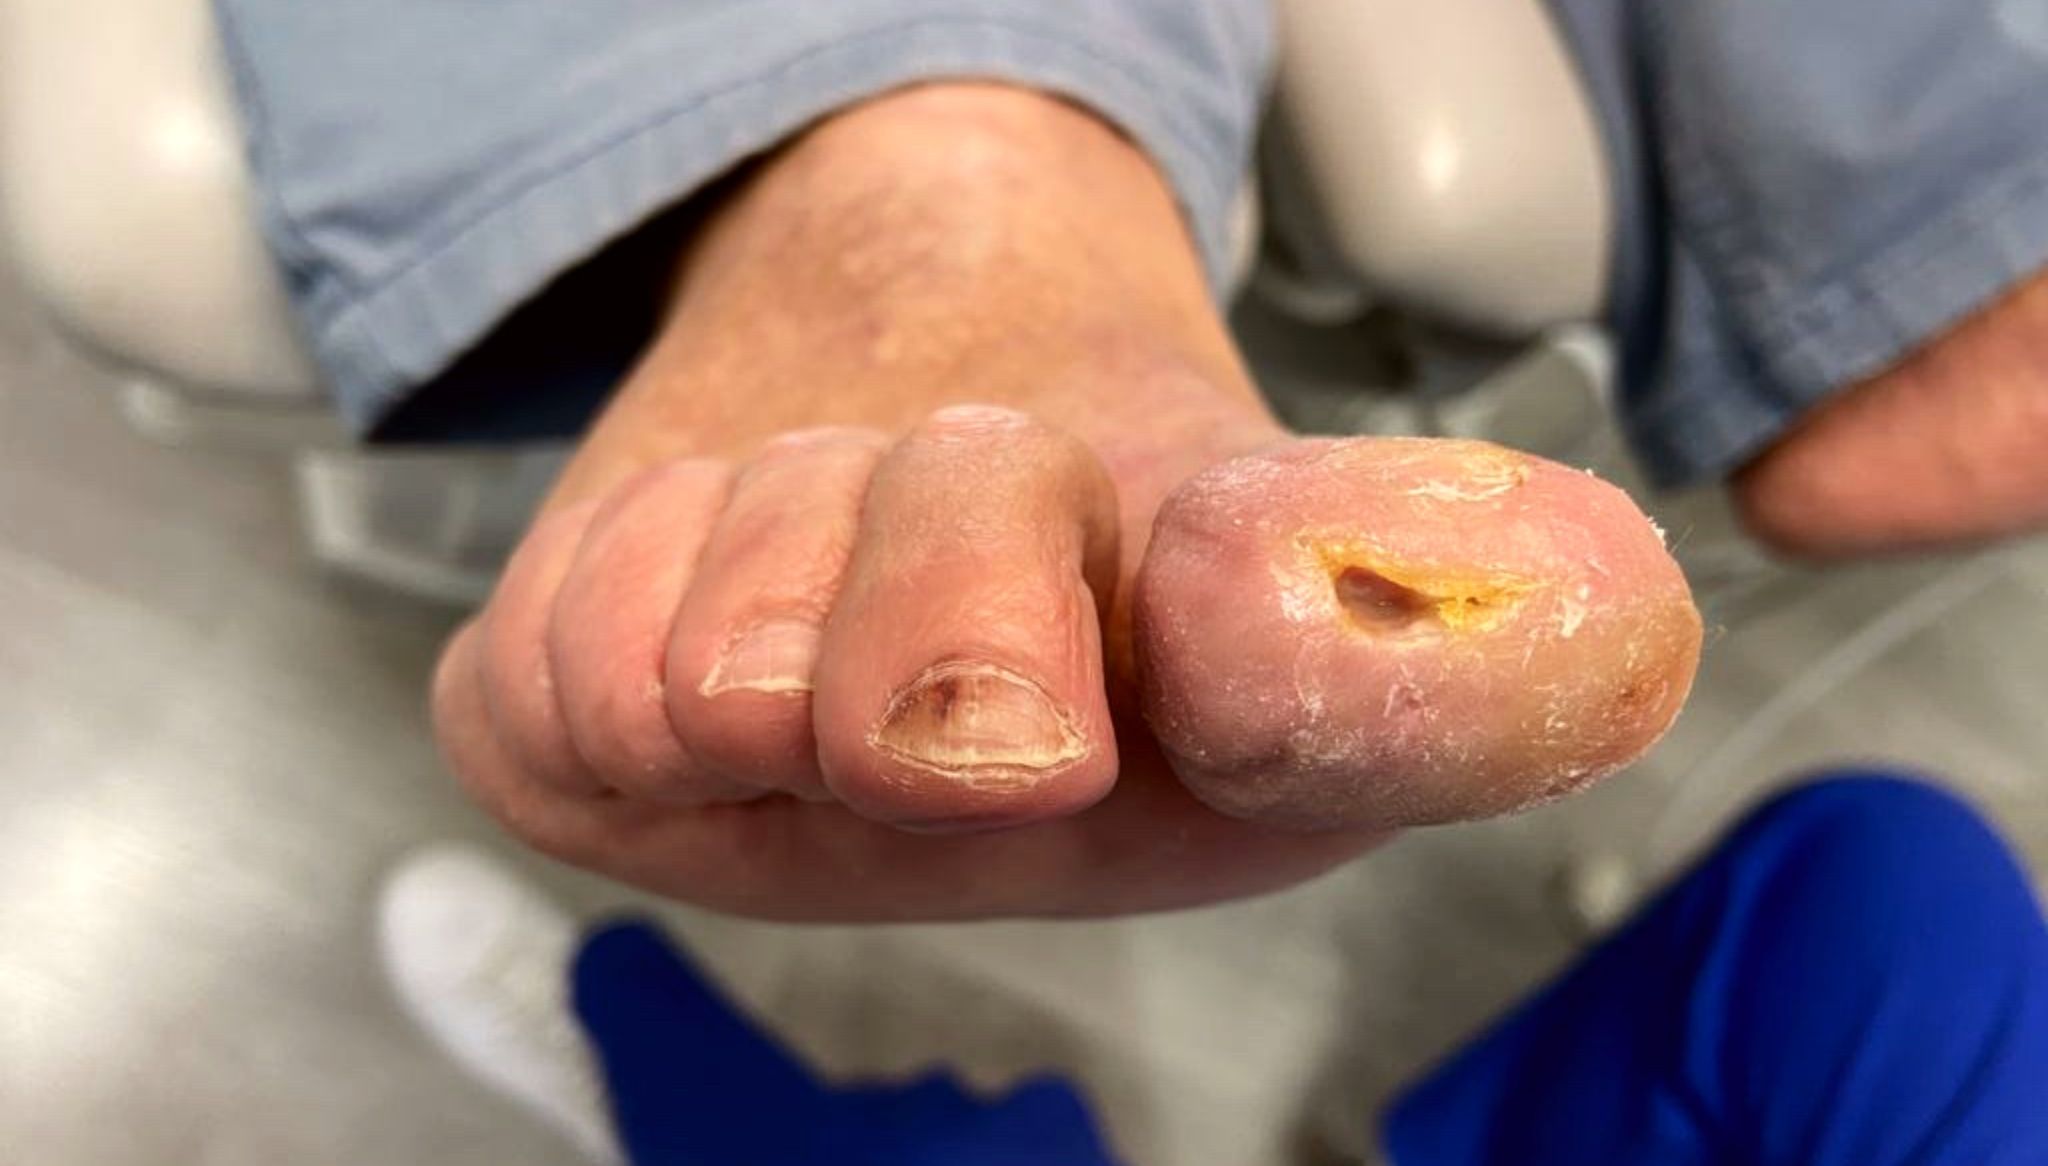 Úlceras en pie diabético que pueden derivar en amputacioes